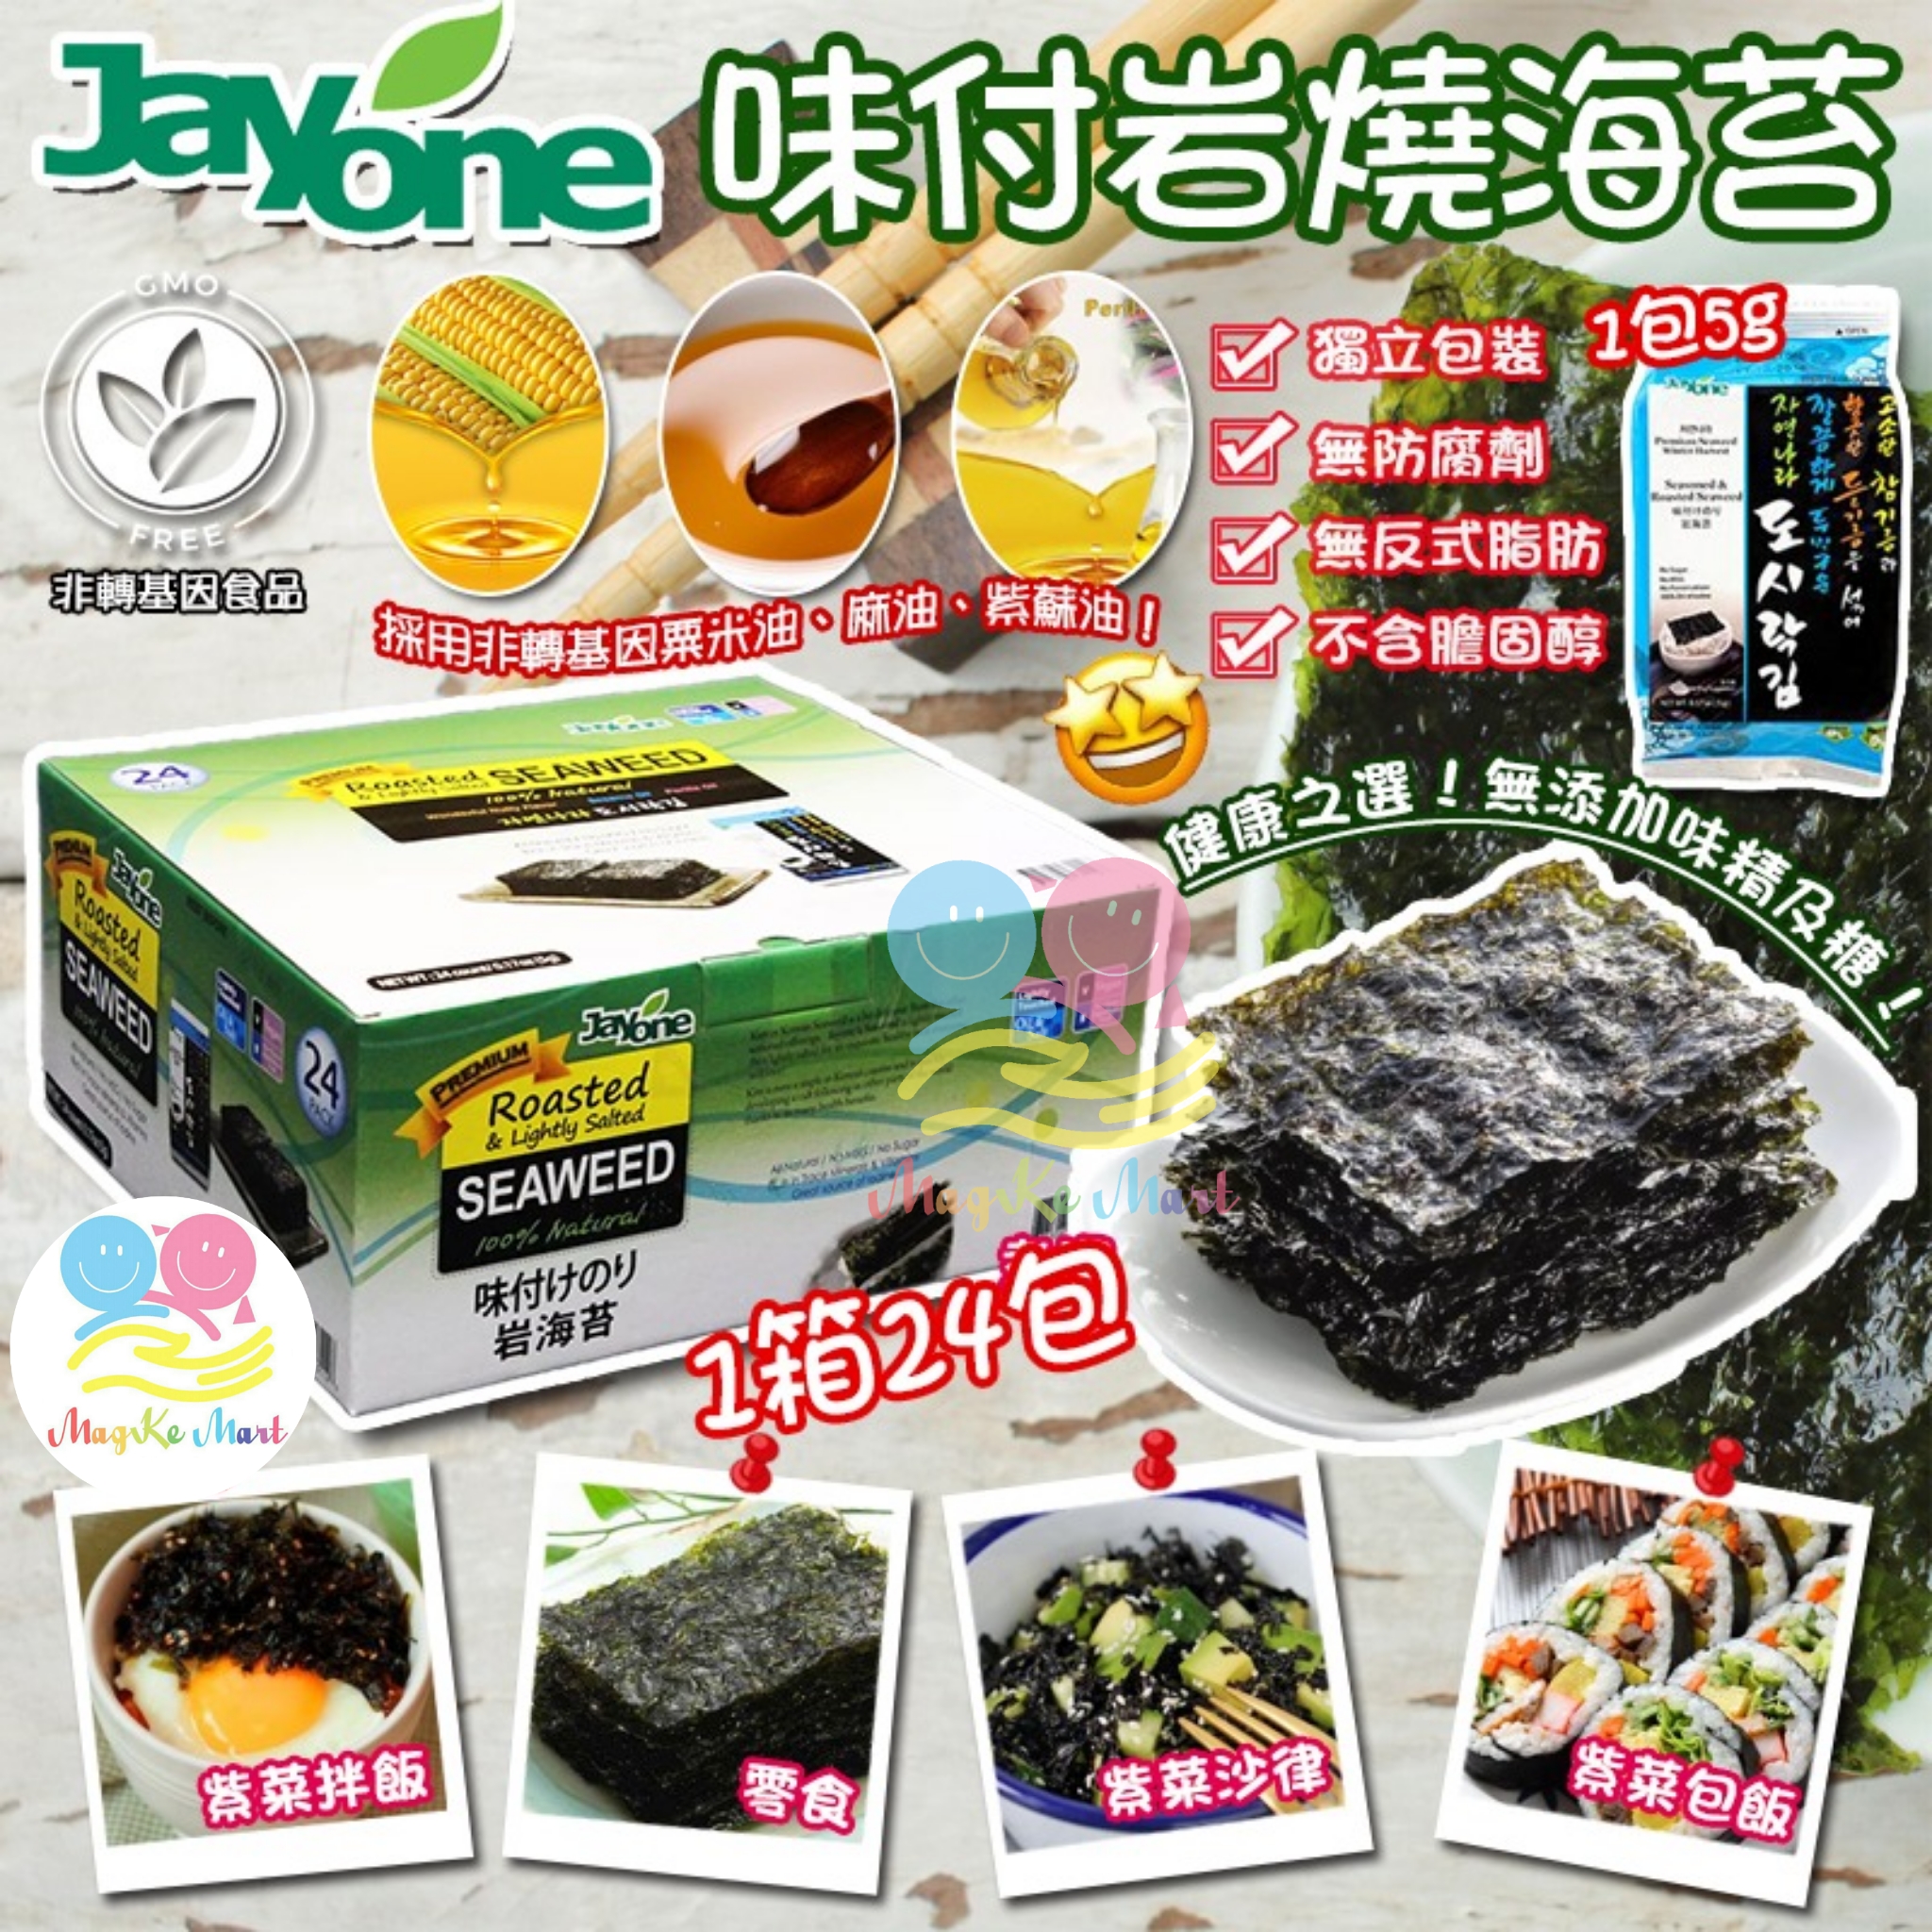 美國 Jayone 味付岩燒海苔(1箱24包)